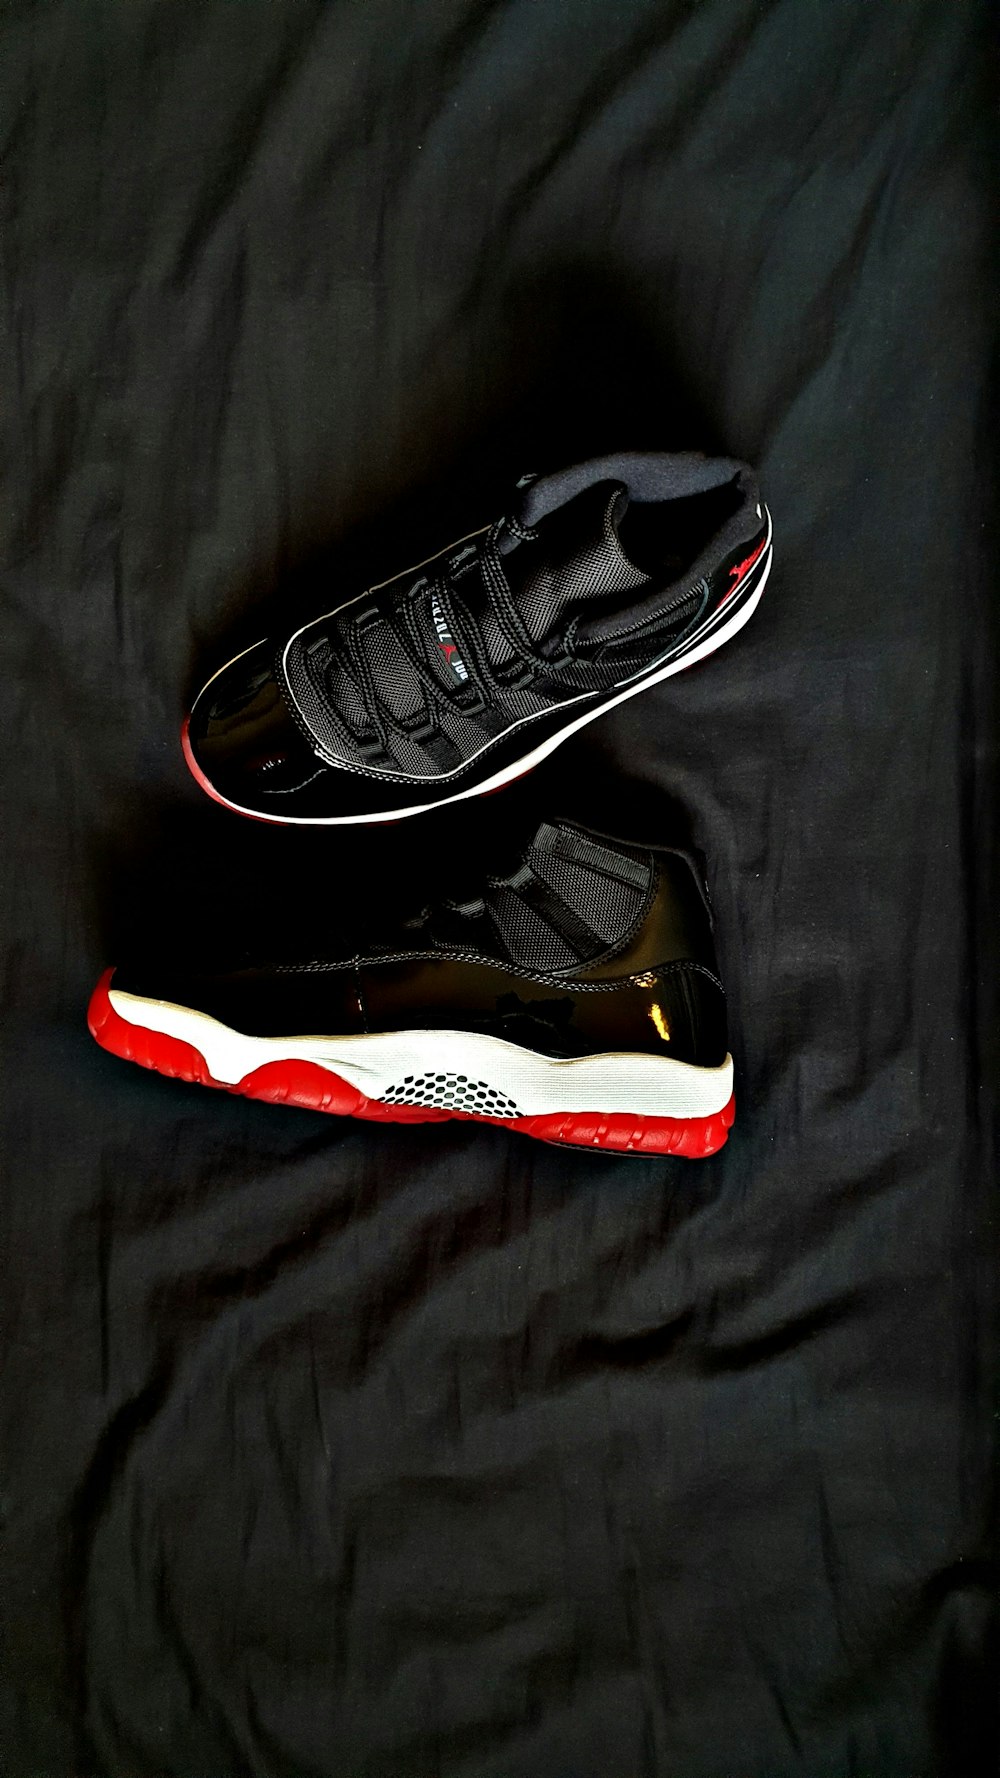 pair of black Air Jordan 11's